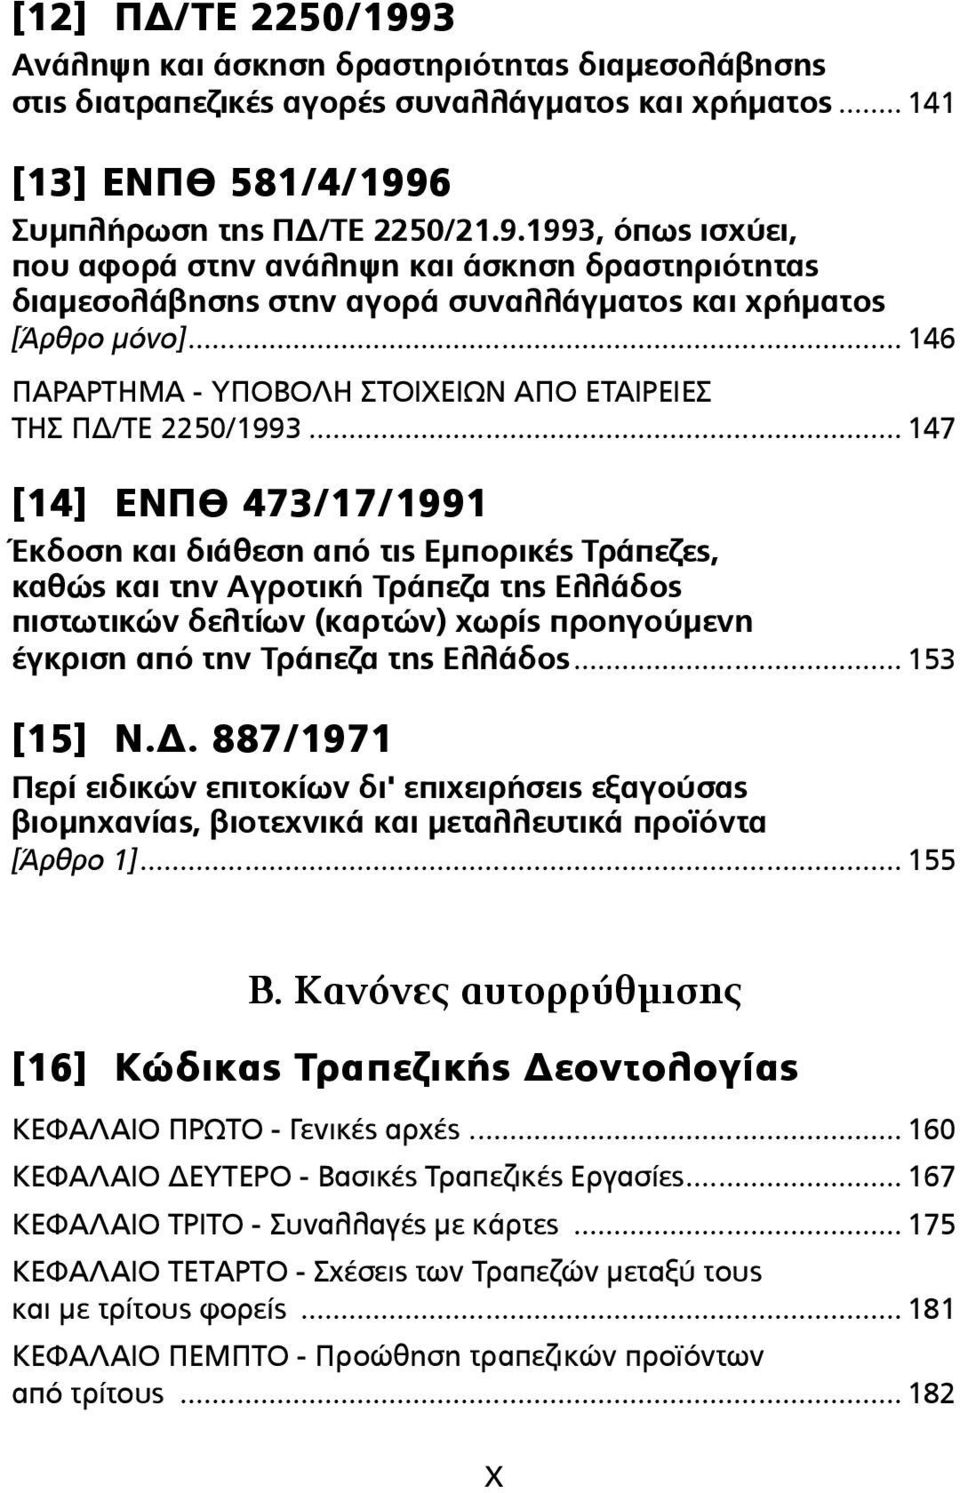 .. 147 [14] ΕΝΠΘ 473/17/1991 Έκδοση και διάθεση από τις Εµπορικές Τράπεζες, καθώς και την Αγροτική Τράπεζα της Ελλάδος πιστωτικών δελτίων (καρτών) χωρίς προηγούµενη έγκριση από την Τράπεζα της Ελλάδος.